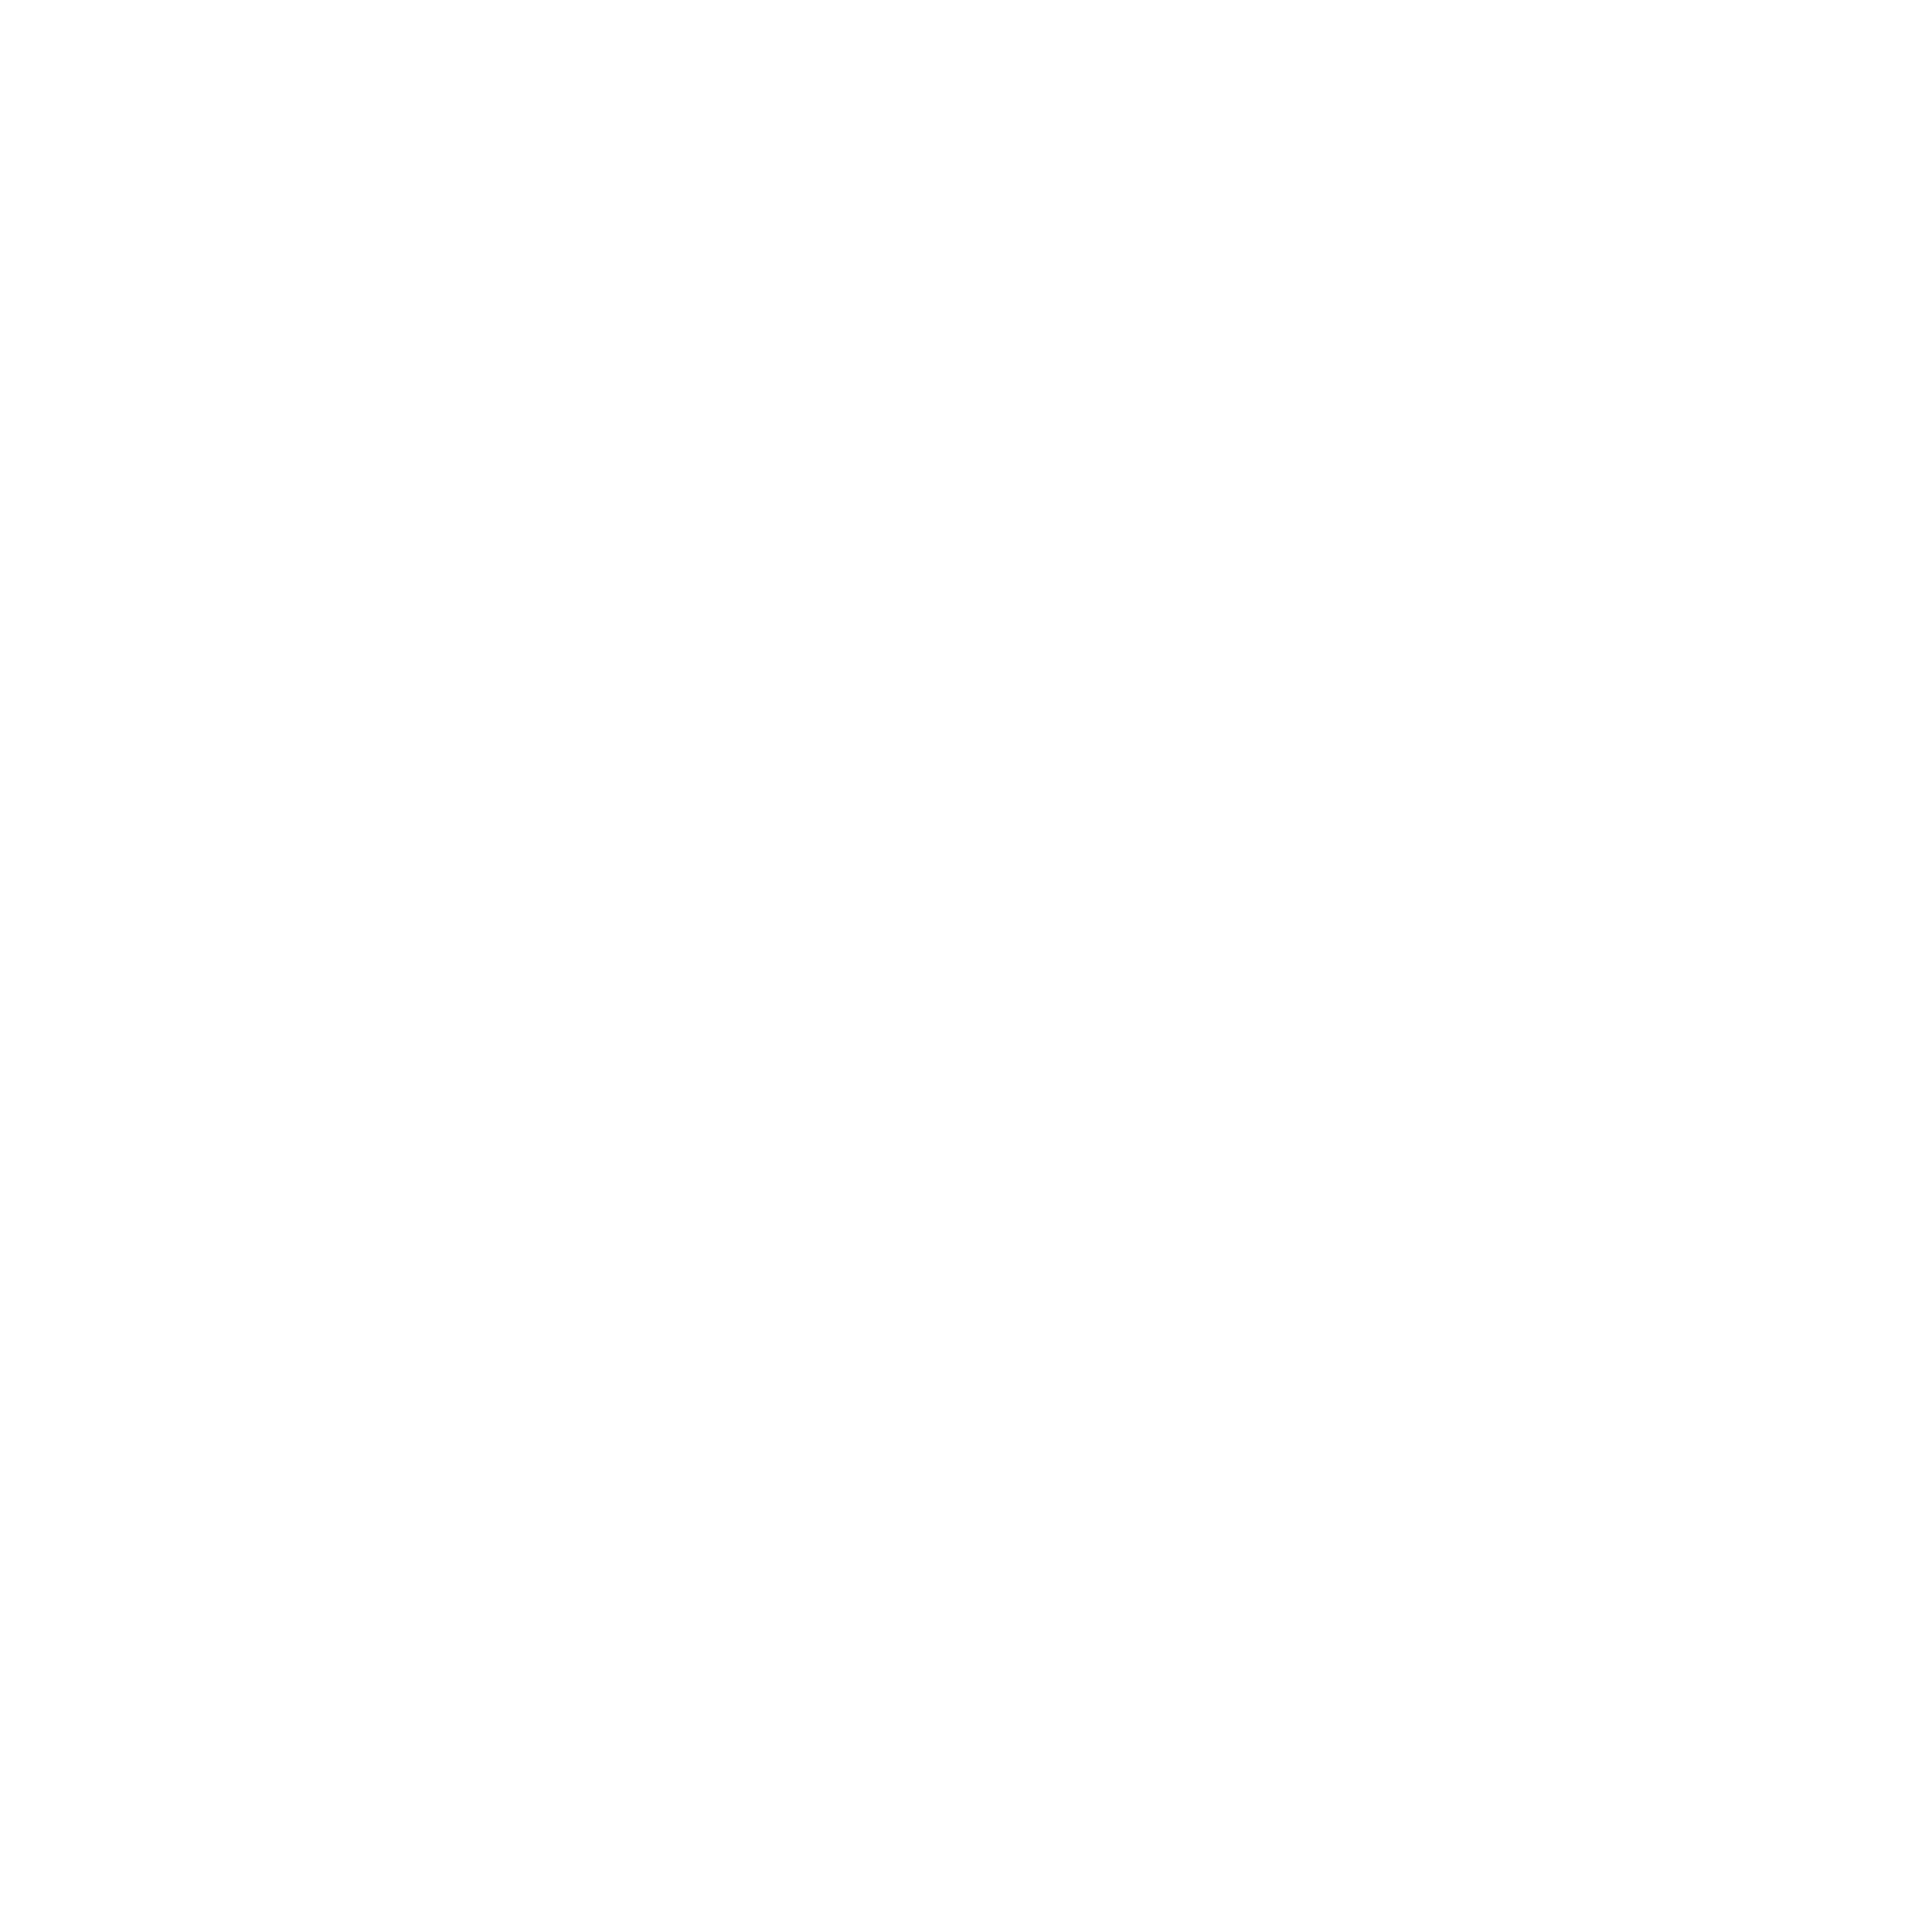 Zeeserver_logo white